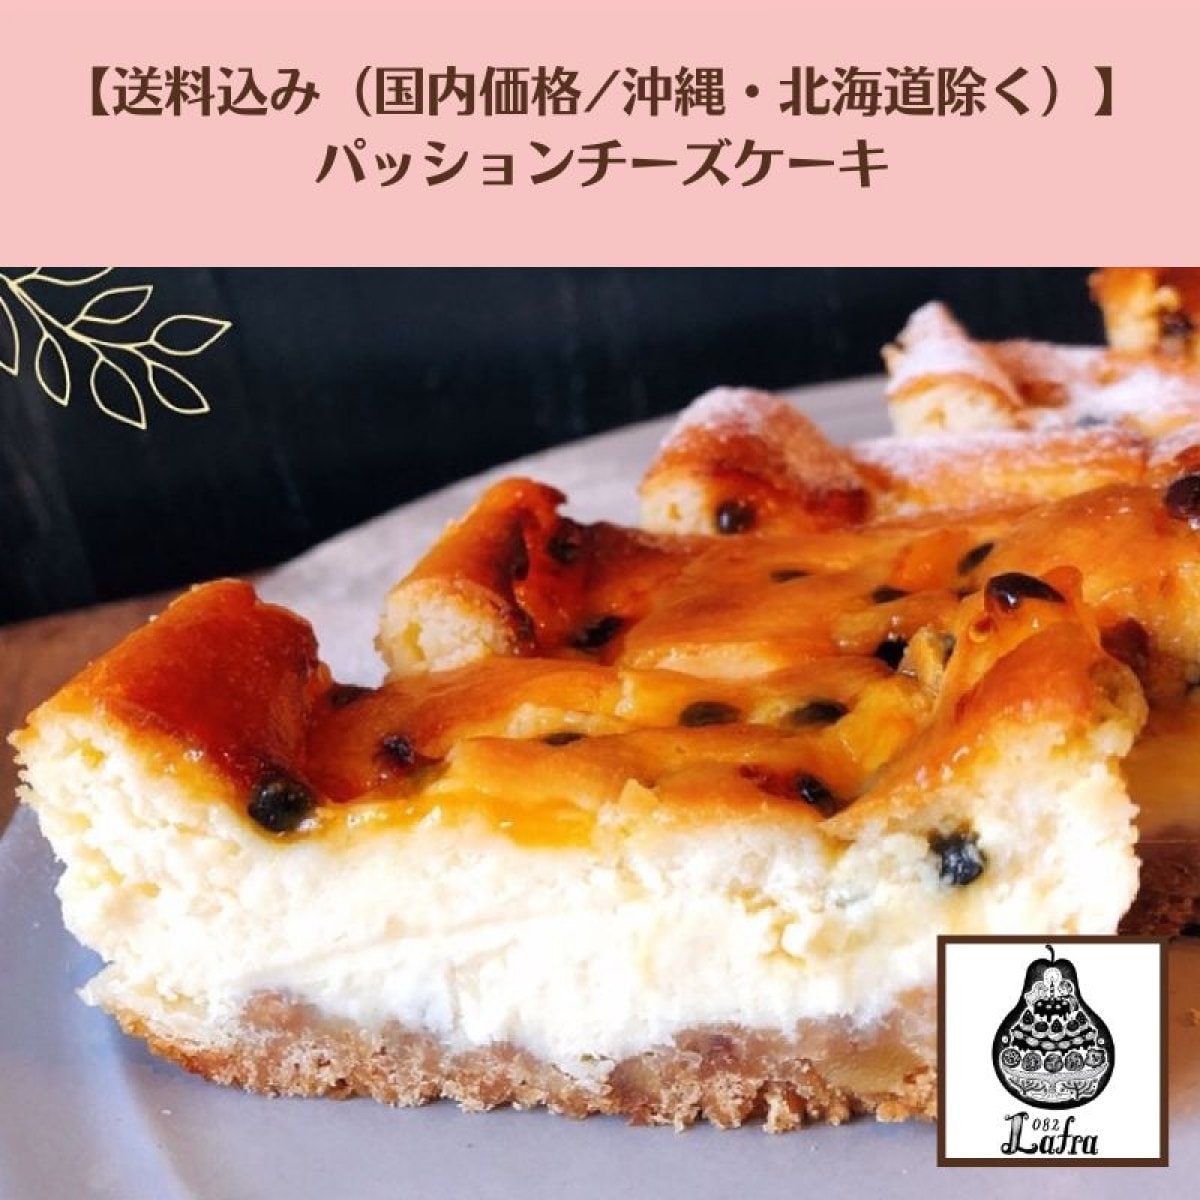 【送料込み（国内価格/沖縄・北海道を除く】パッションフルーツチーズケーキ《Natural passion okinawa 無農薬パッション》